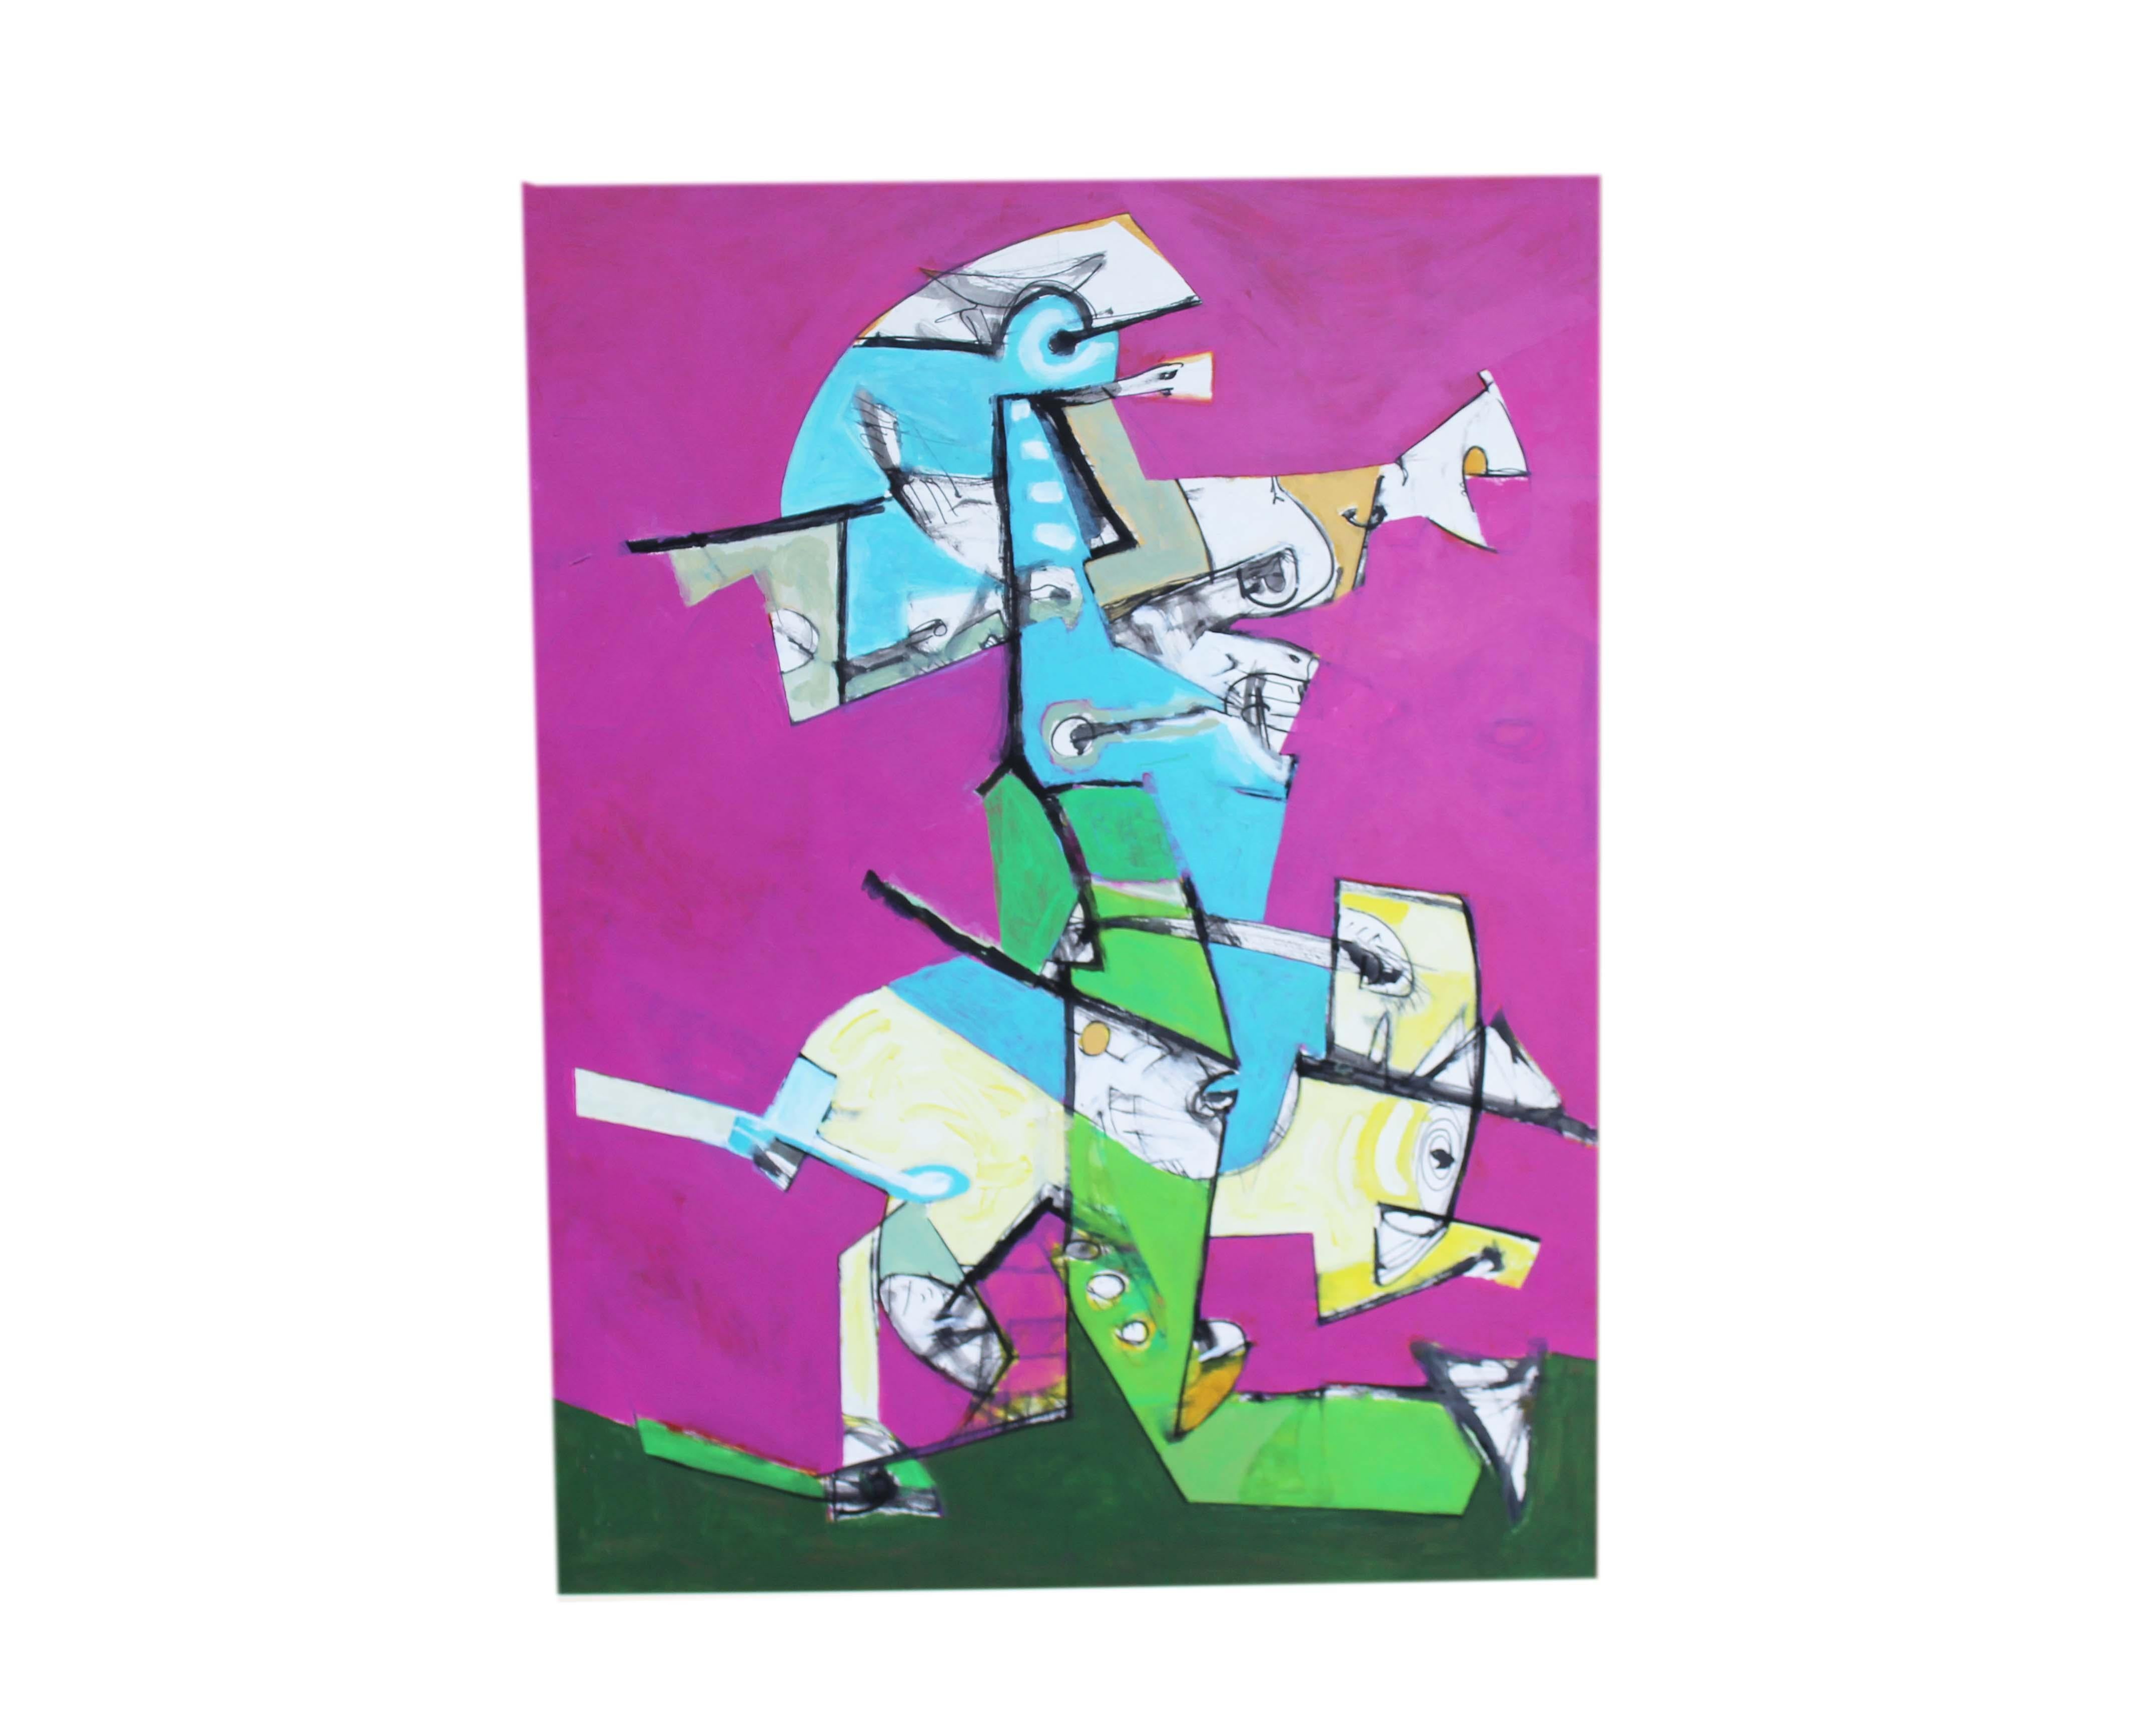 Peinture abstraite en techniques mixtes de l'artiste américain James L. Bruch (1942-2023). Une forme figurative est contrastée sur un fond rose vif, dans des nuances de bleu, de vert, de gris, d'orange, de noir et de blanc. Le tableau est présenté